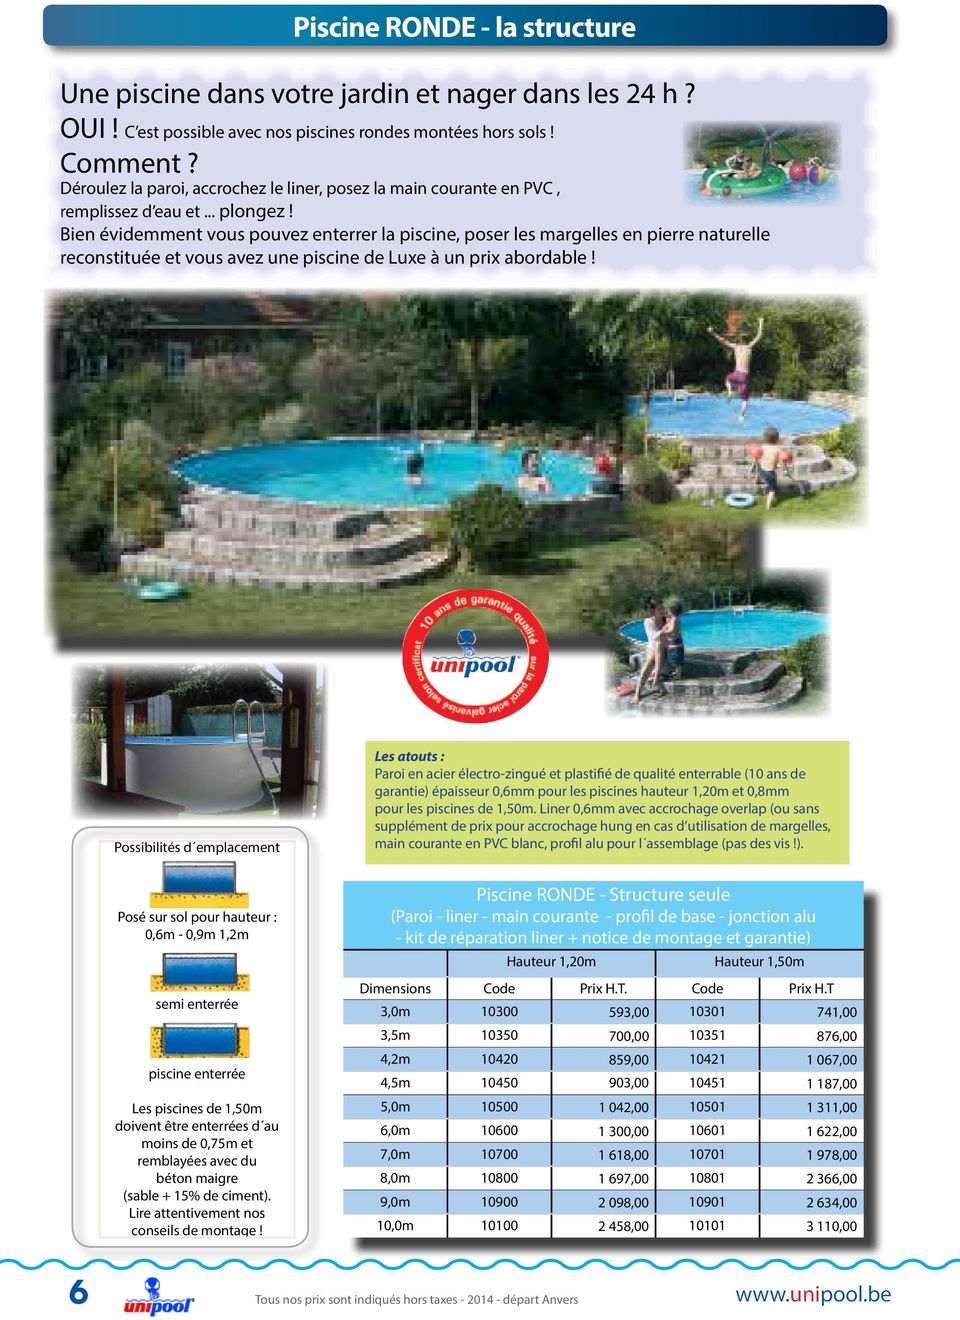 Bien évidemment vous pouvez enterrer la piscine, poser les margelles en pierre naturelle reconstituée et vous avez une piscine de Luxe à un prix abordable!